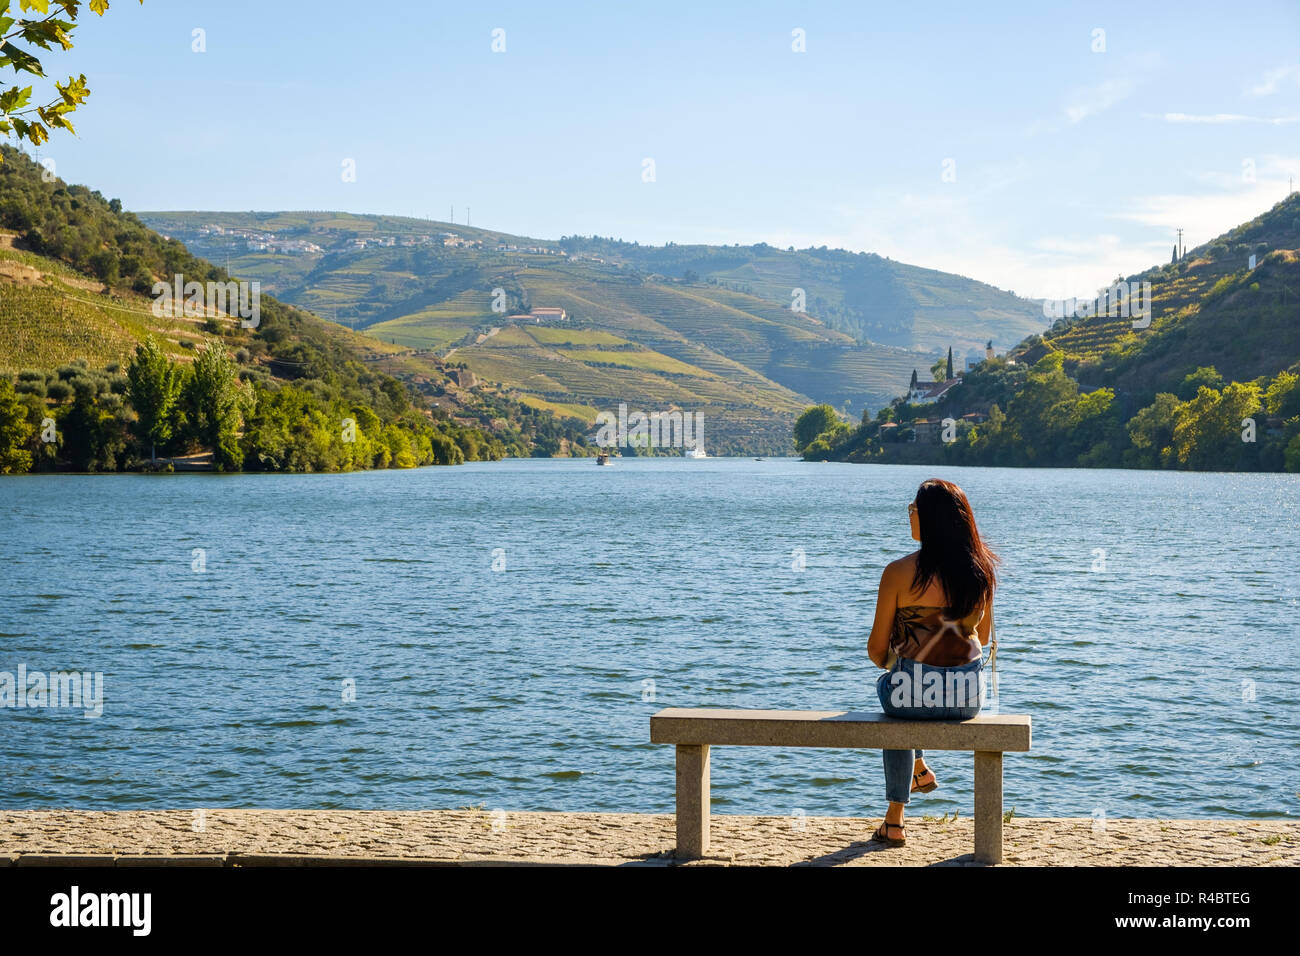 Pinhao, Portugal - 05 de octubre de 2018 : Mujer admirando los hermosos paisajes a orillas del río Duero, Vila Real, Portugal Foto de stock